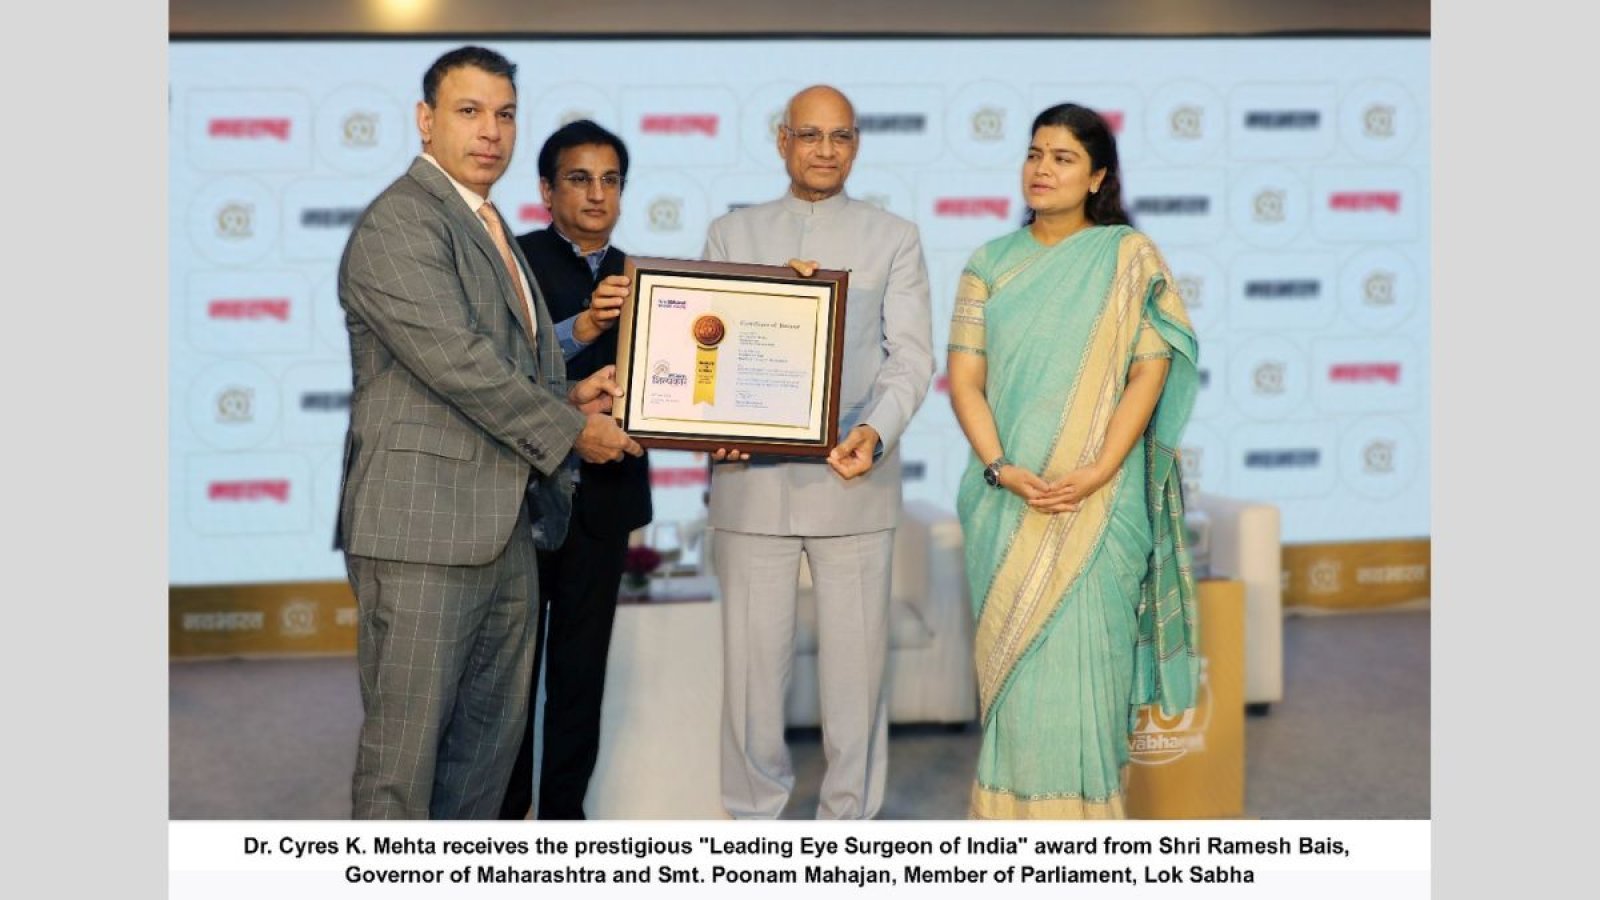 डॉ. सायरस के.  मेहता यांना महाराष्ट्राचे राज्यपाल श्री रमेश बैस यांच्याकडून प्रतिष्ठित 'भारतीय नेत्र शल्यचिकित्सक' पुरस्कार प्राप्त